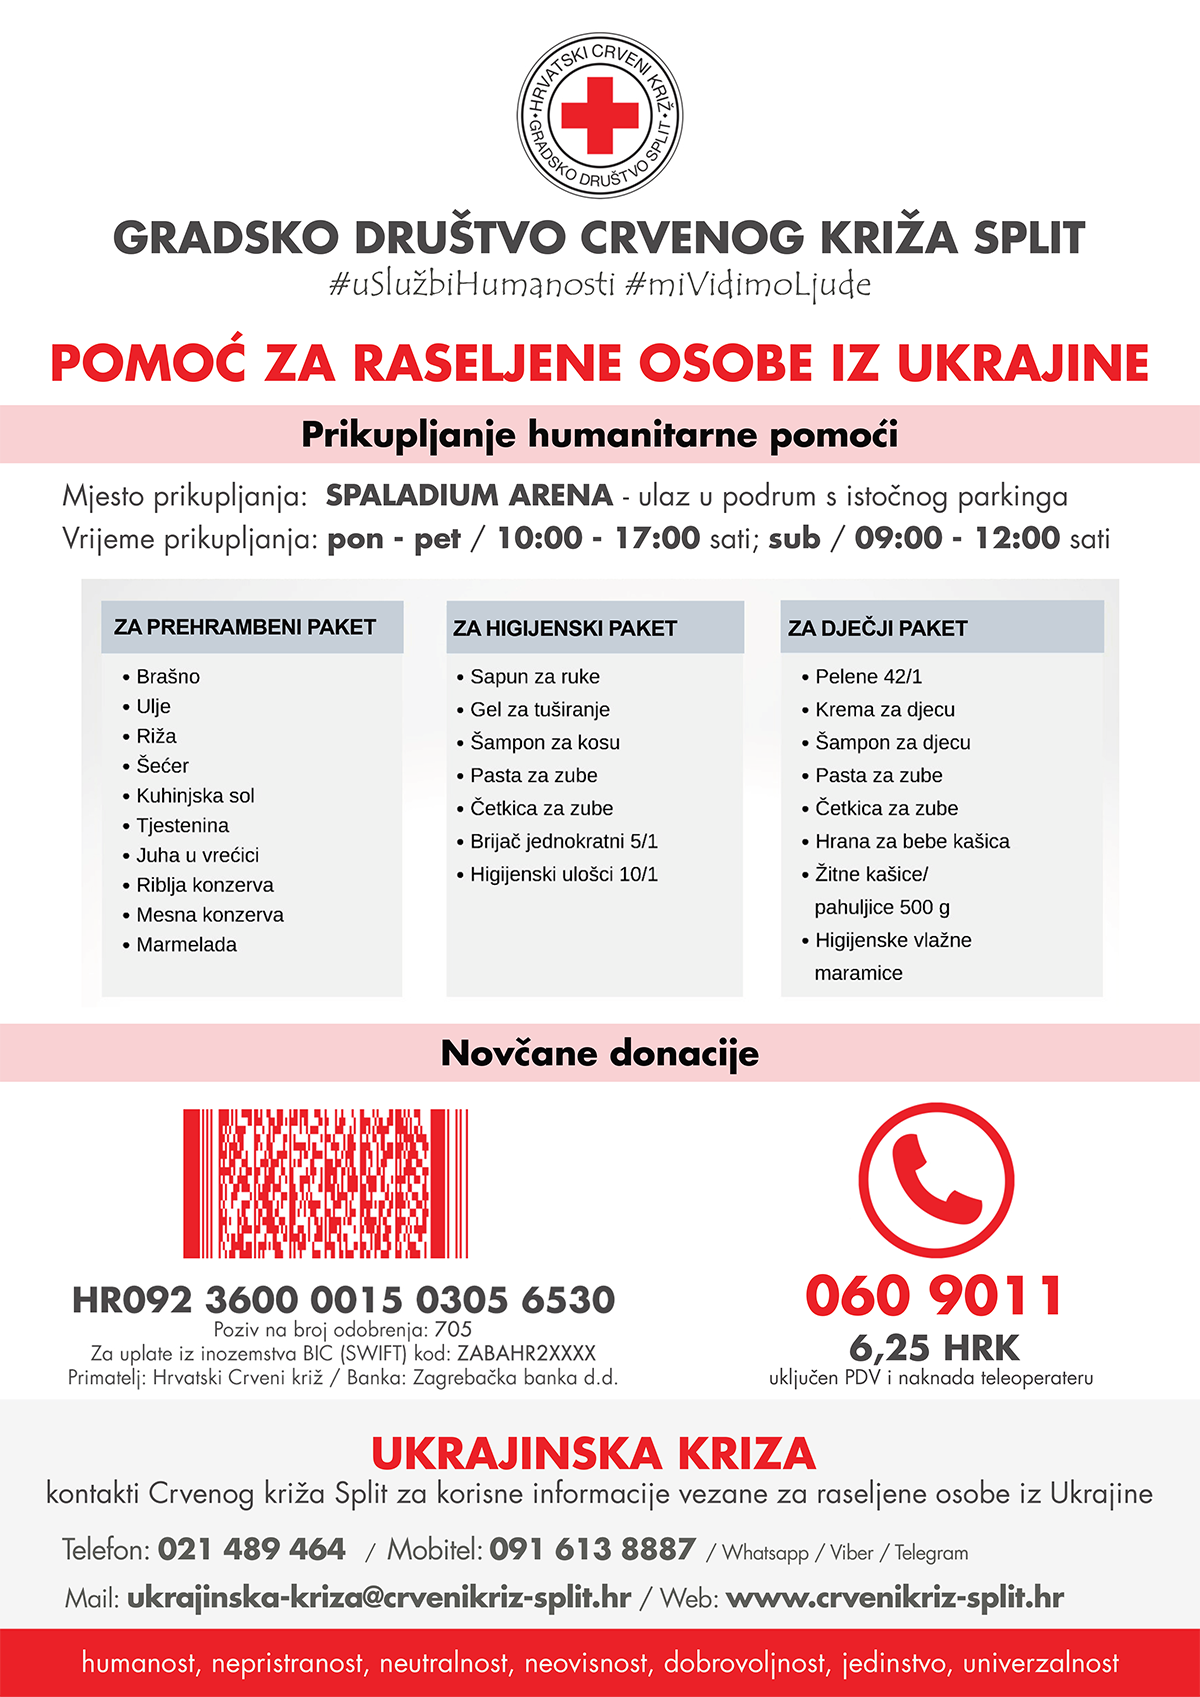 gdck_split_info_Pomoc-za-Ukrajinu-2